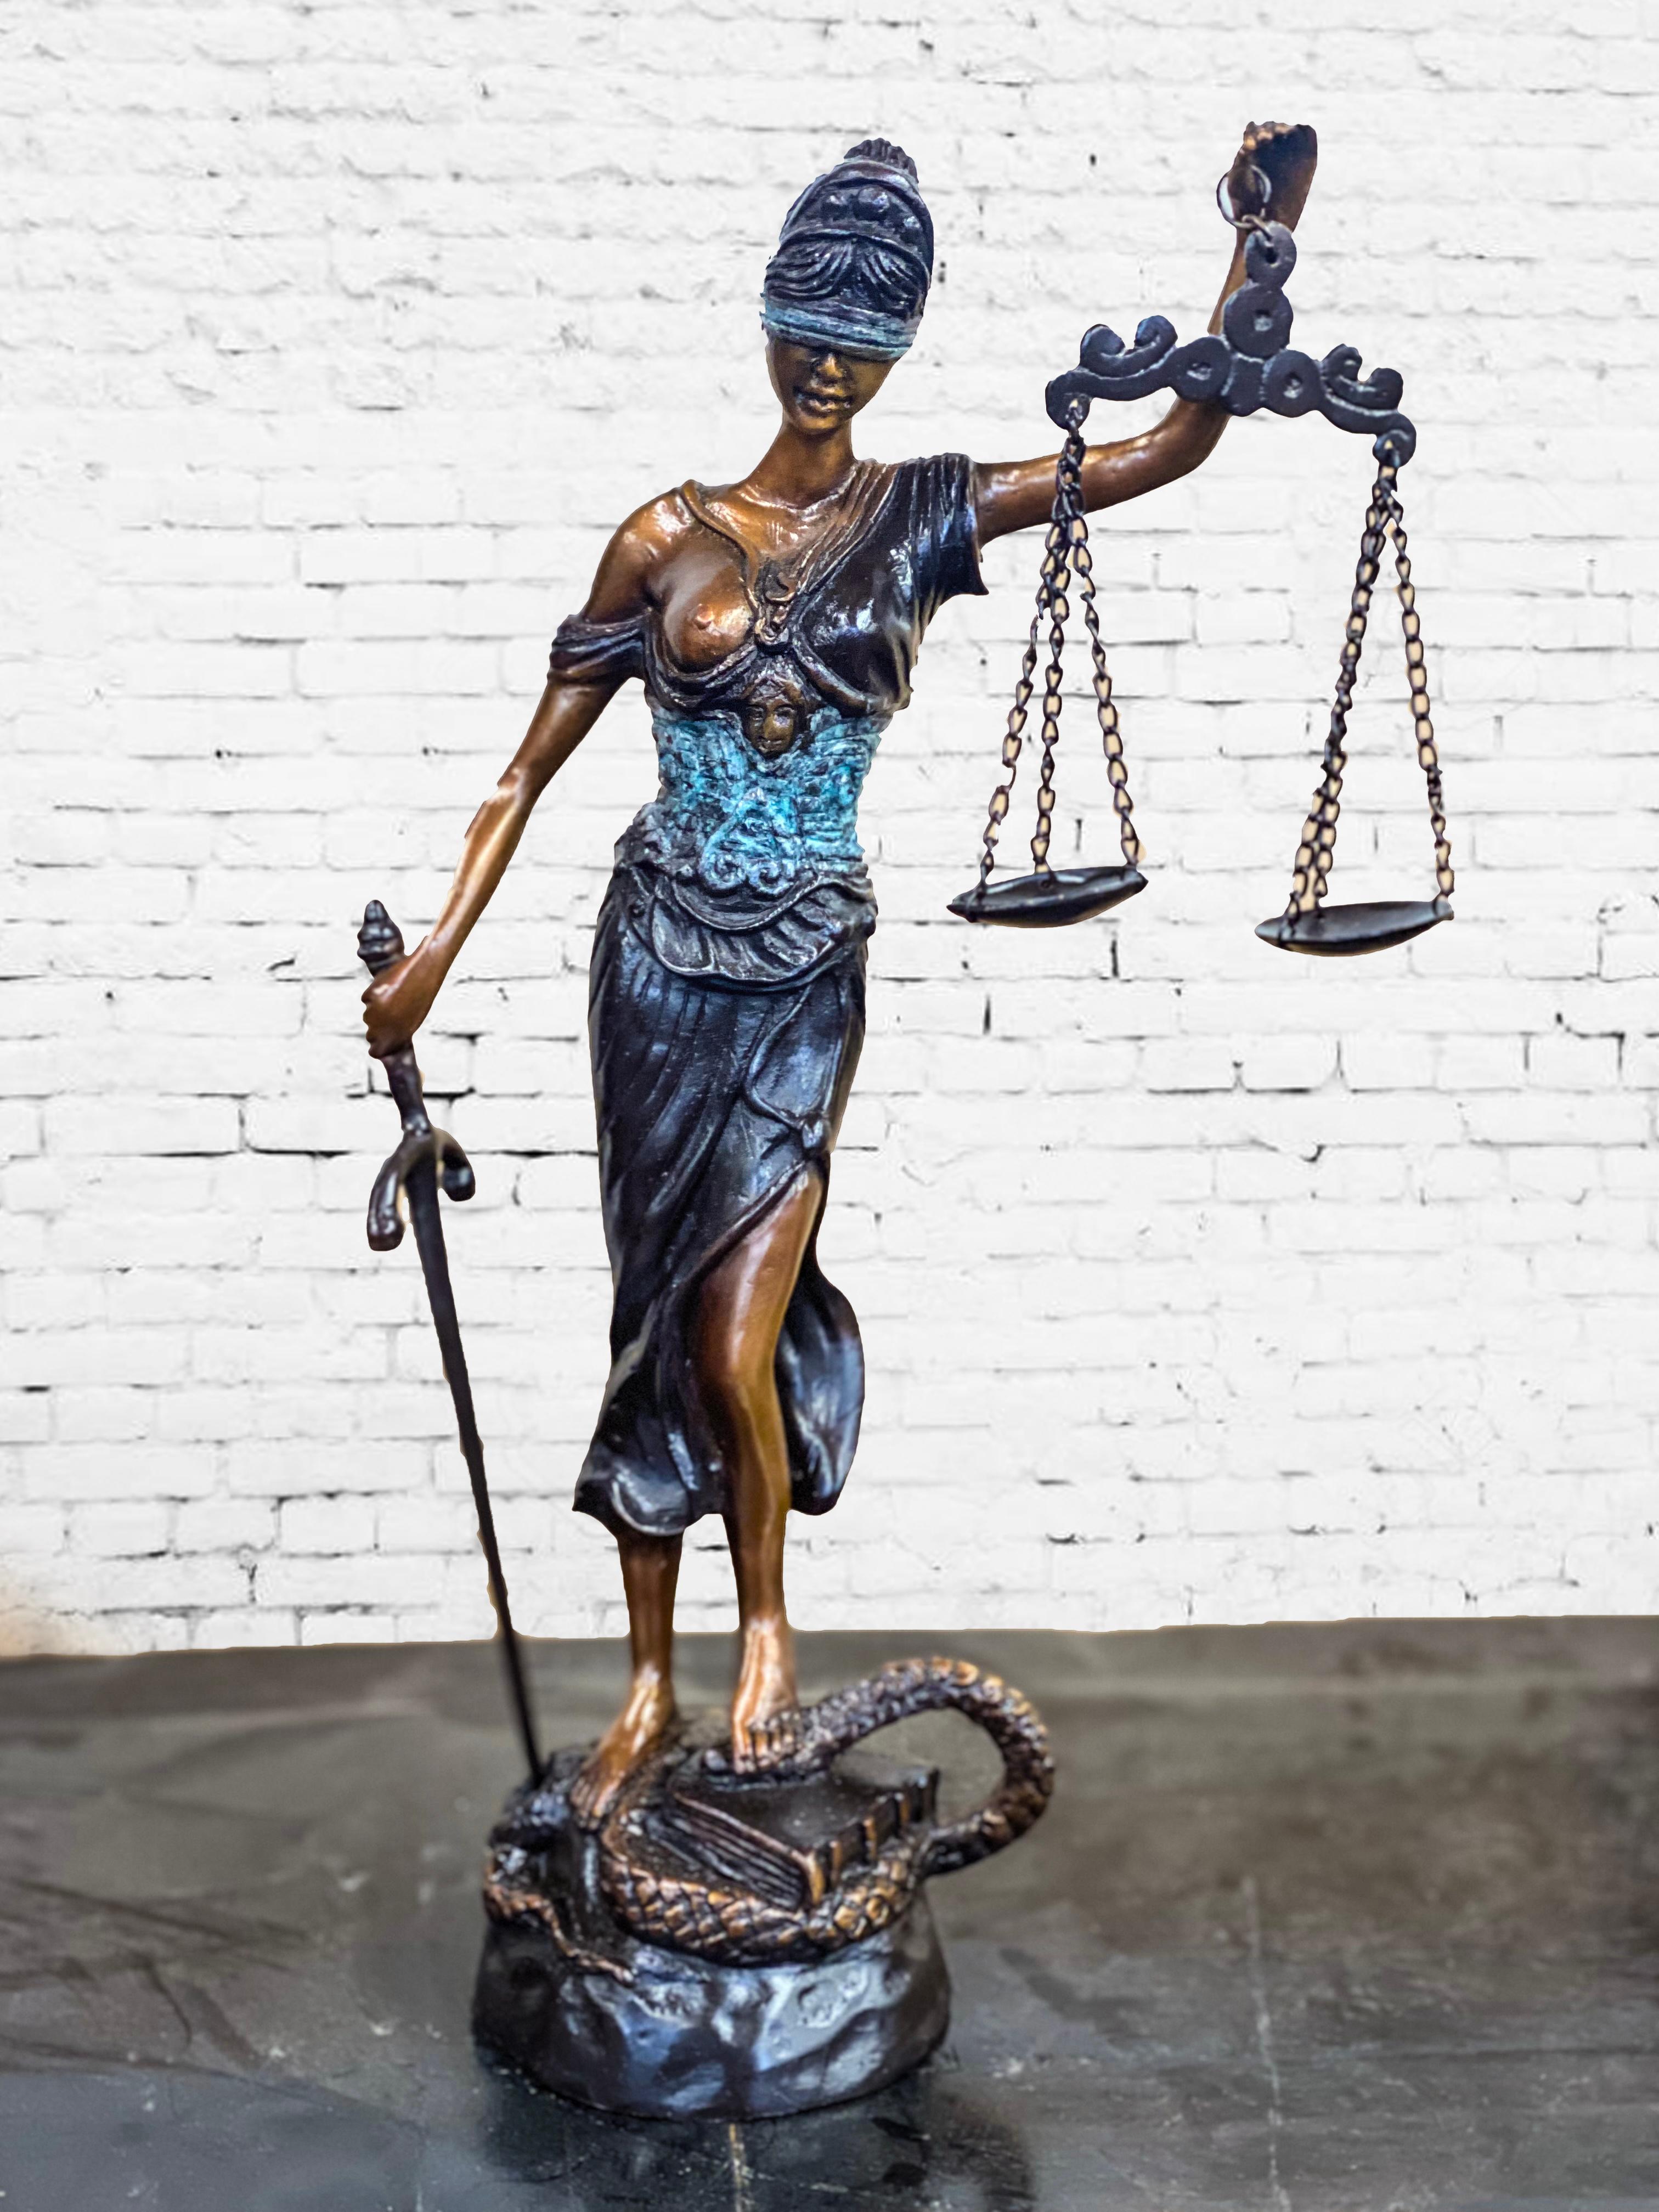 Une statue de Randolph Rose Lady Justice est une personnification de la force morale des systèmes judiciaires. Il tire son origine de l'art romain ancien connu sous le nom de Lustitia ou Justitia, qui est l'équivalent de la déesse grecque Dice. Lady